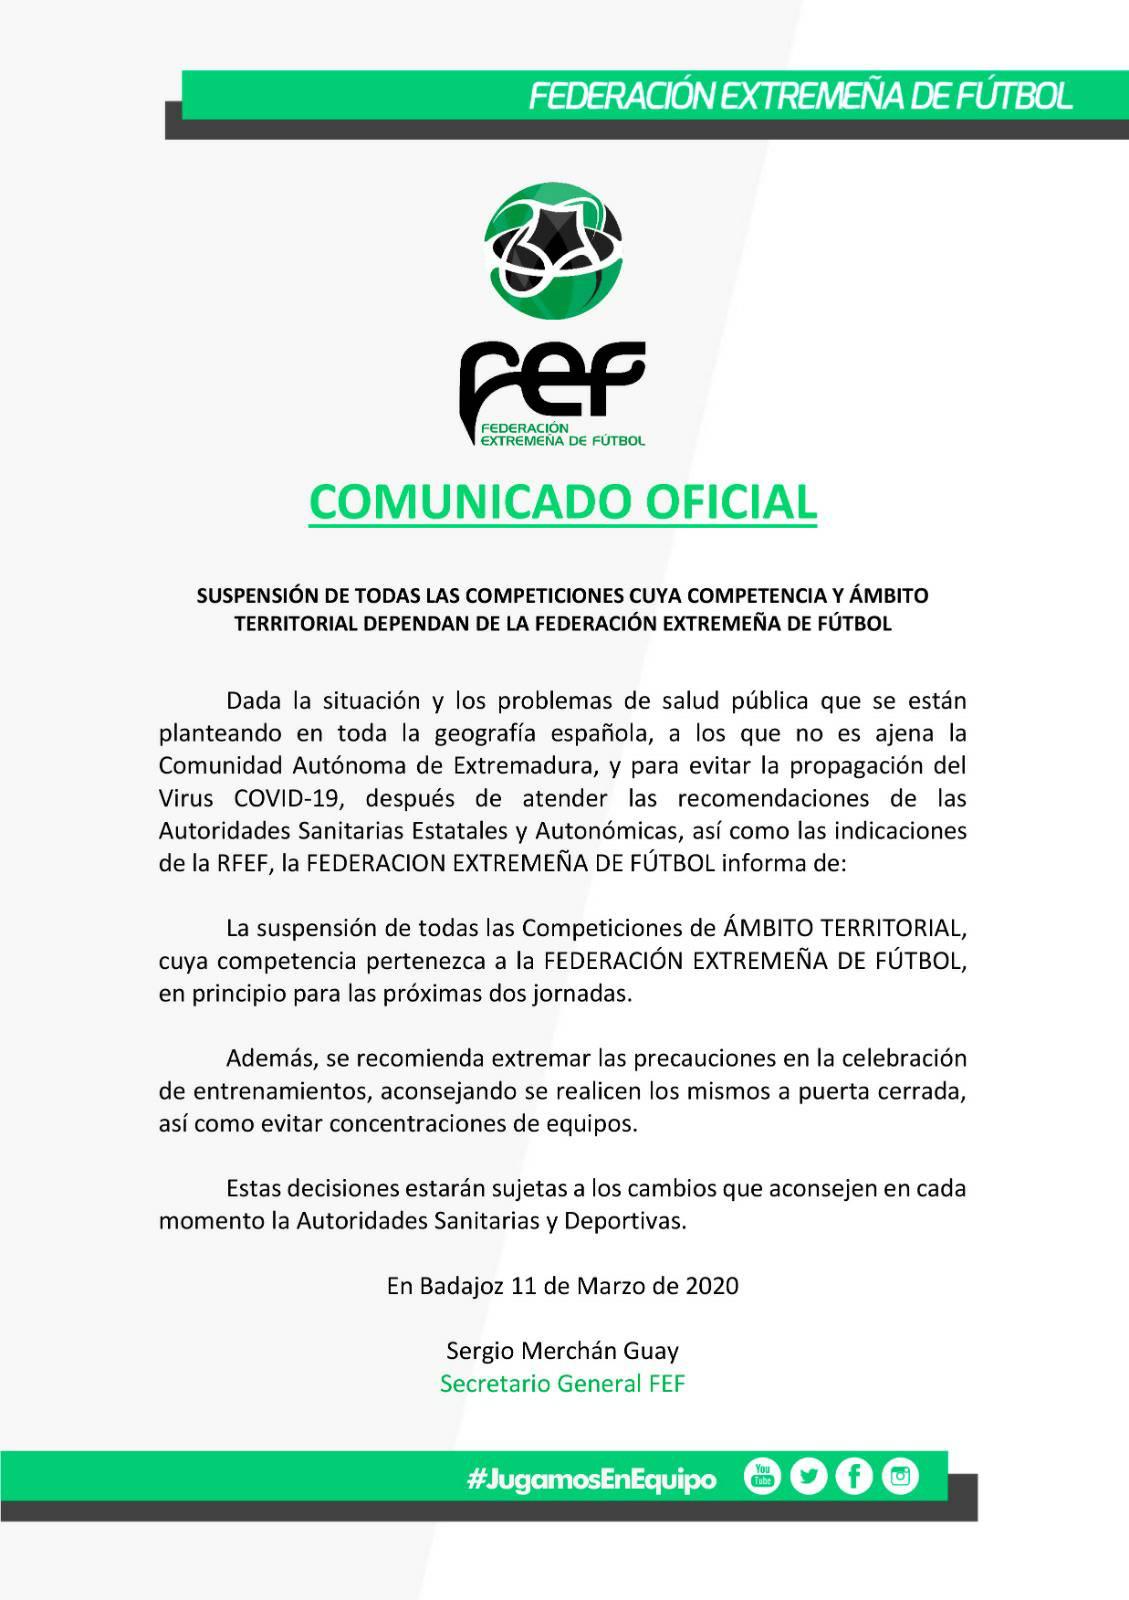 La Federación Extremeña de Fútbol suspende todas las competiciones en Extremadura por el coronavirus 2020